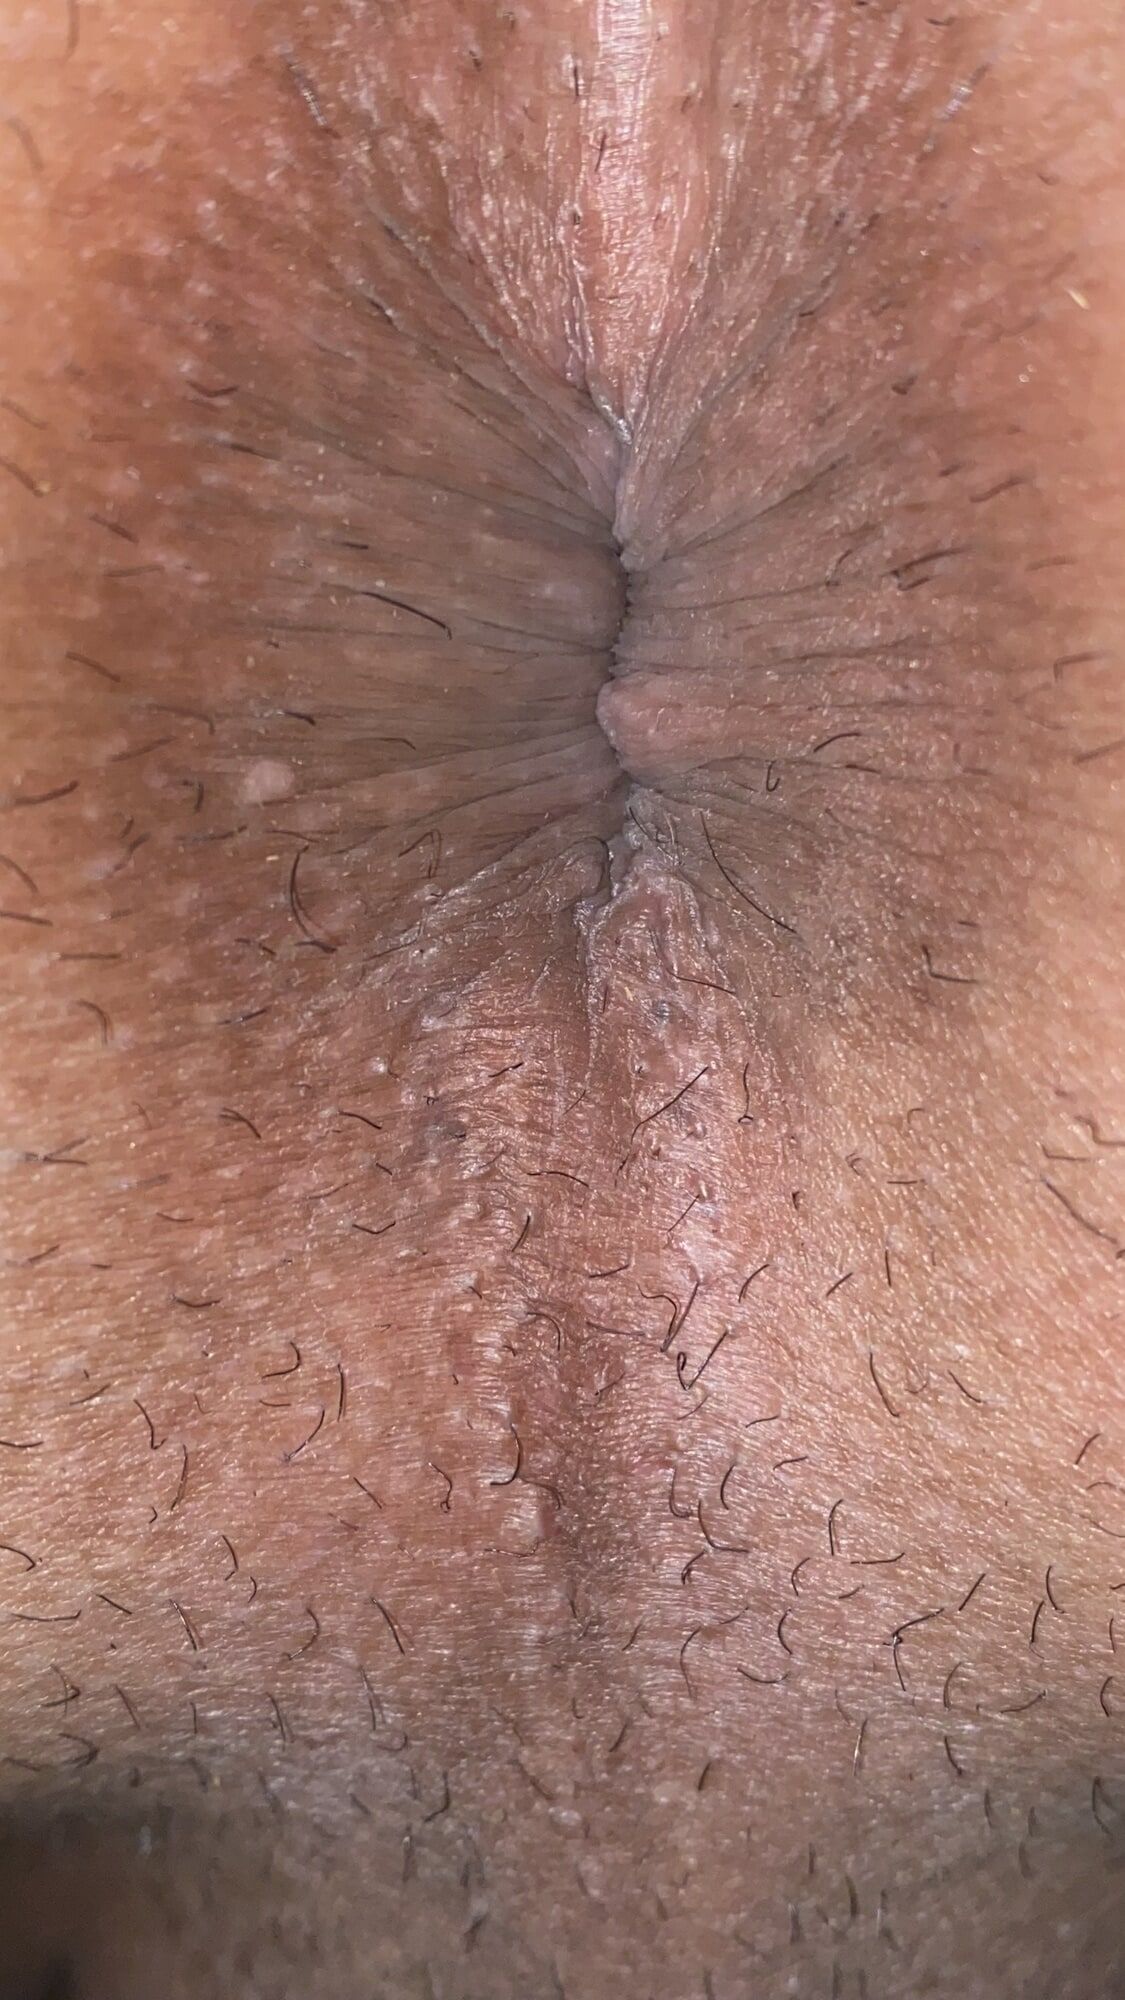 Close-up of a man's anus #24